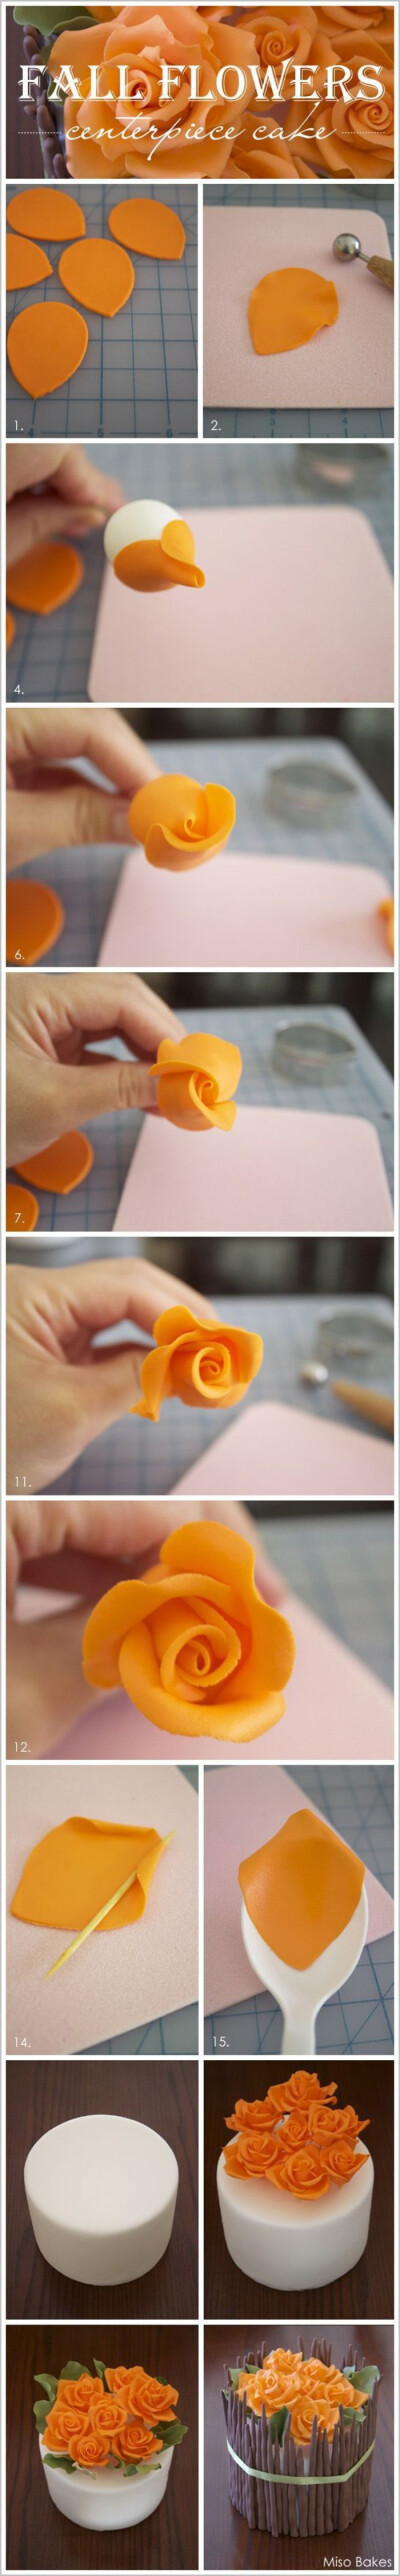 逼真的软陶粘土花朵花卉花盆手工制作